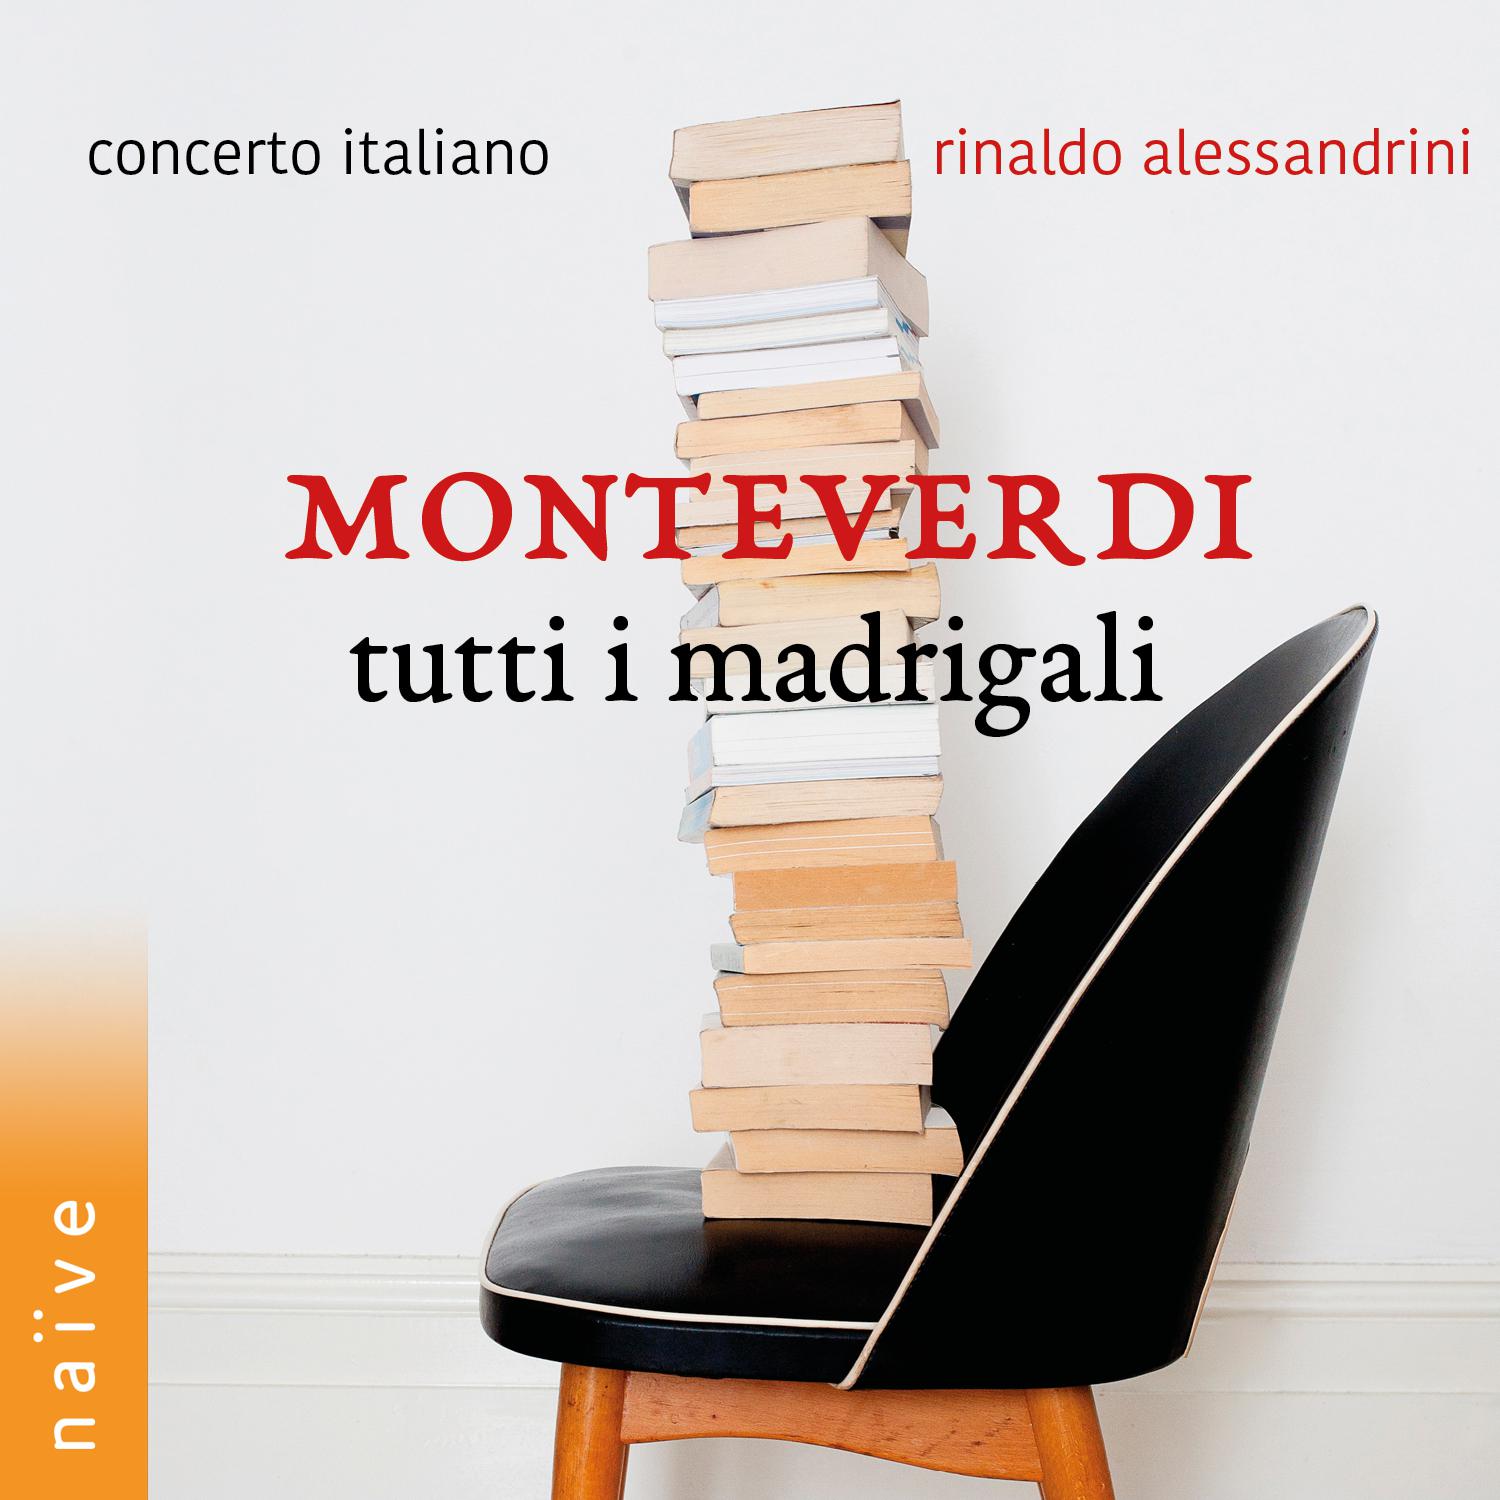 Rinaldo Alessandrini - Madrigals, Book VI:Una donna fra l'altre